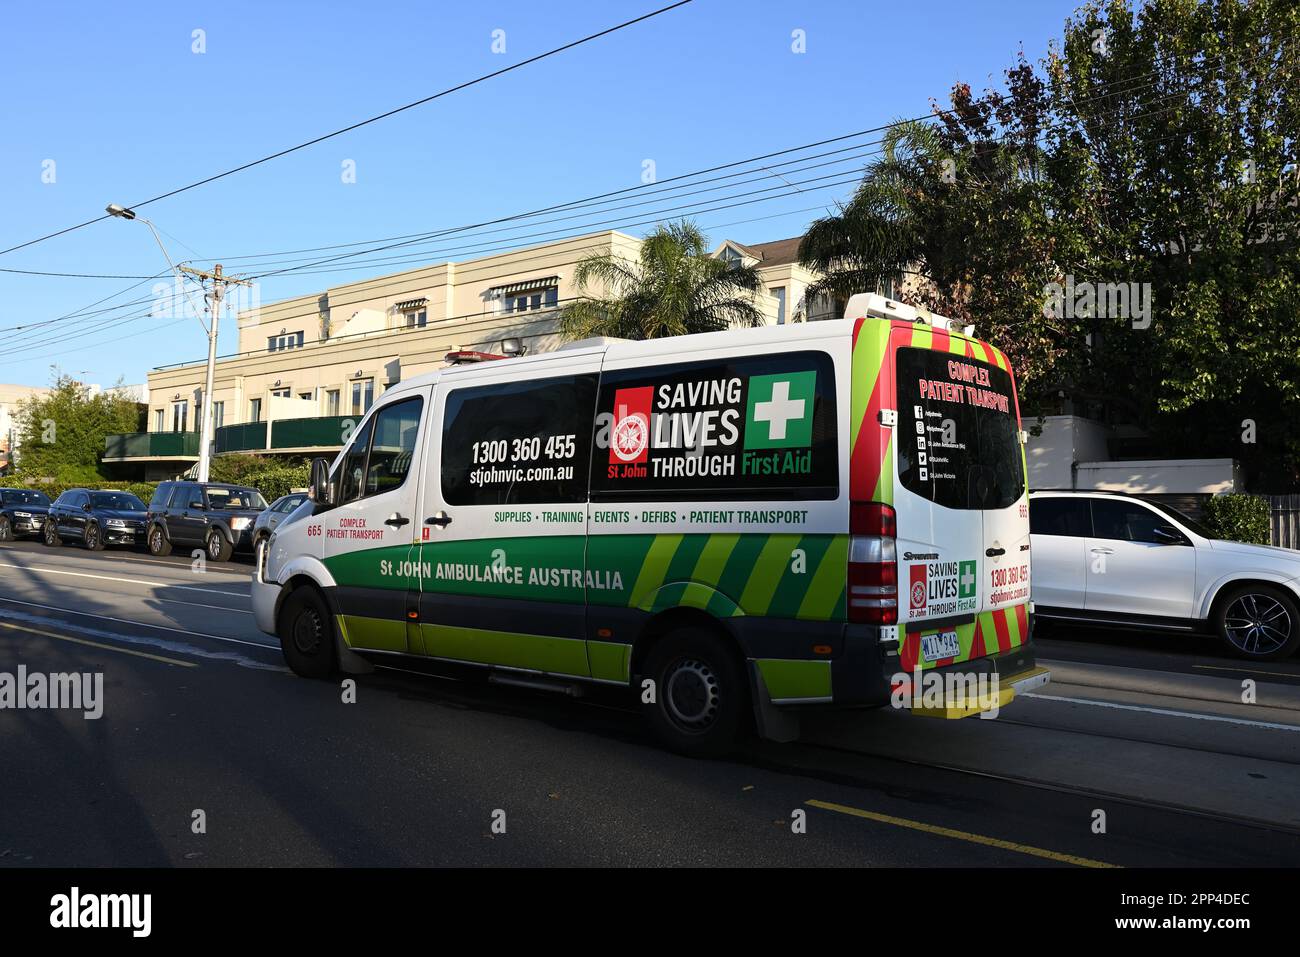 Un véhicule de transport de patients du complexe St John Ambulance Australia, une imprimante Mercedes Benz, qui traverse la banlieue de Melbourne Banque D'Images